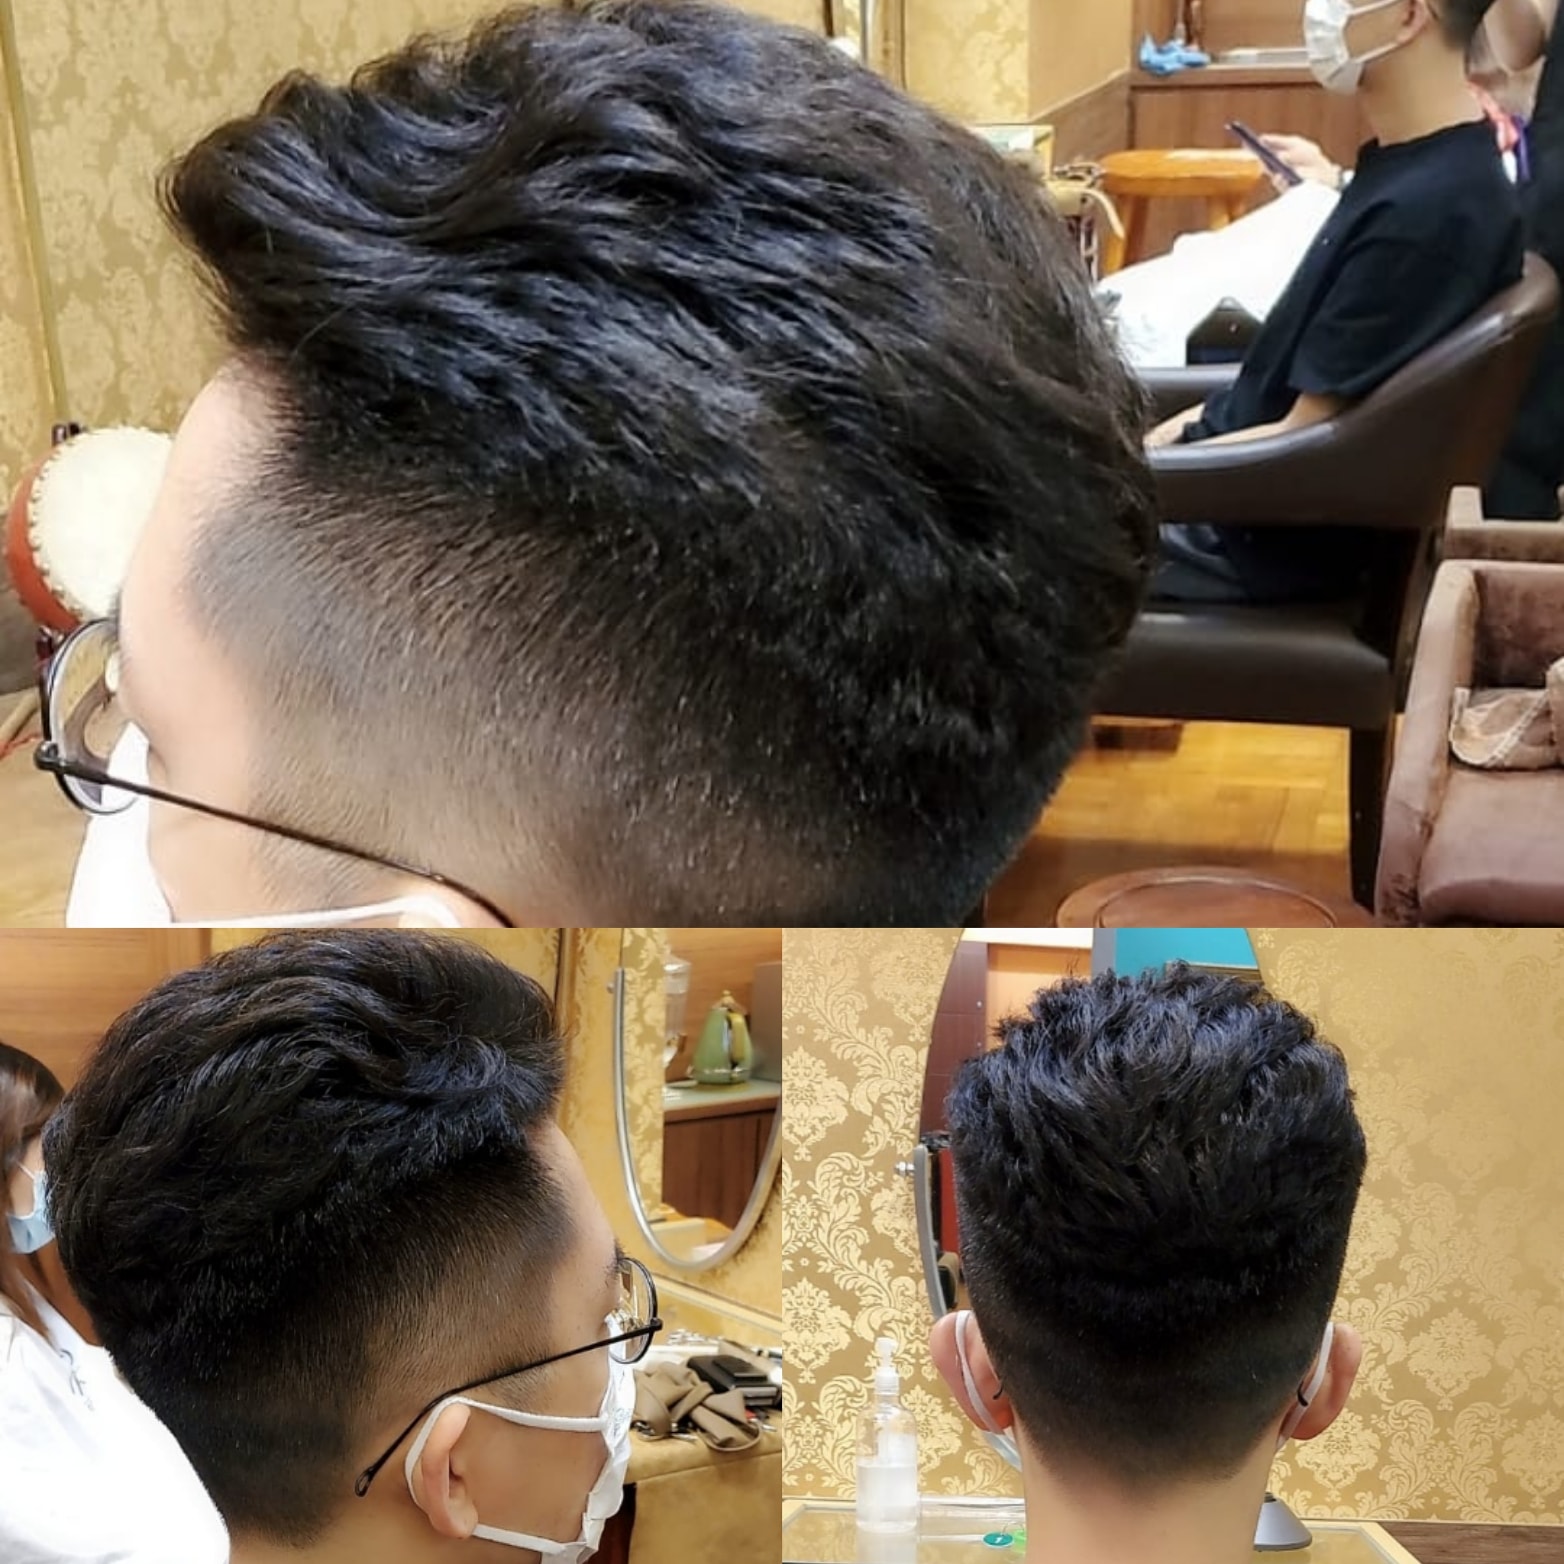 髮型作品参考:韓式電熱棒燙髮